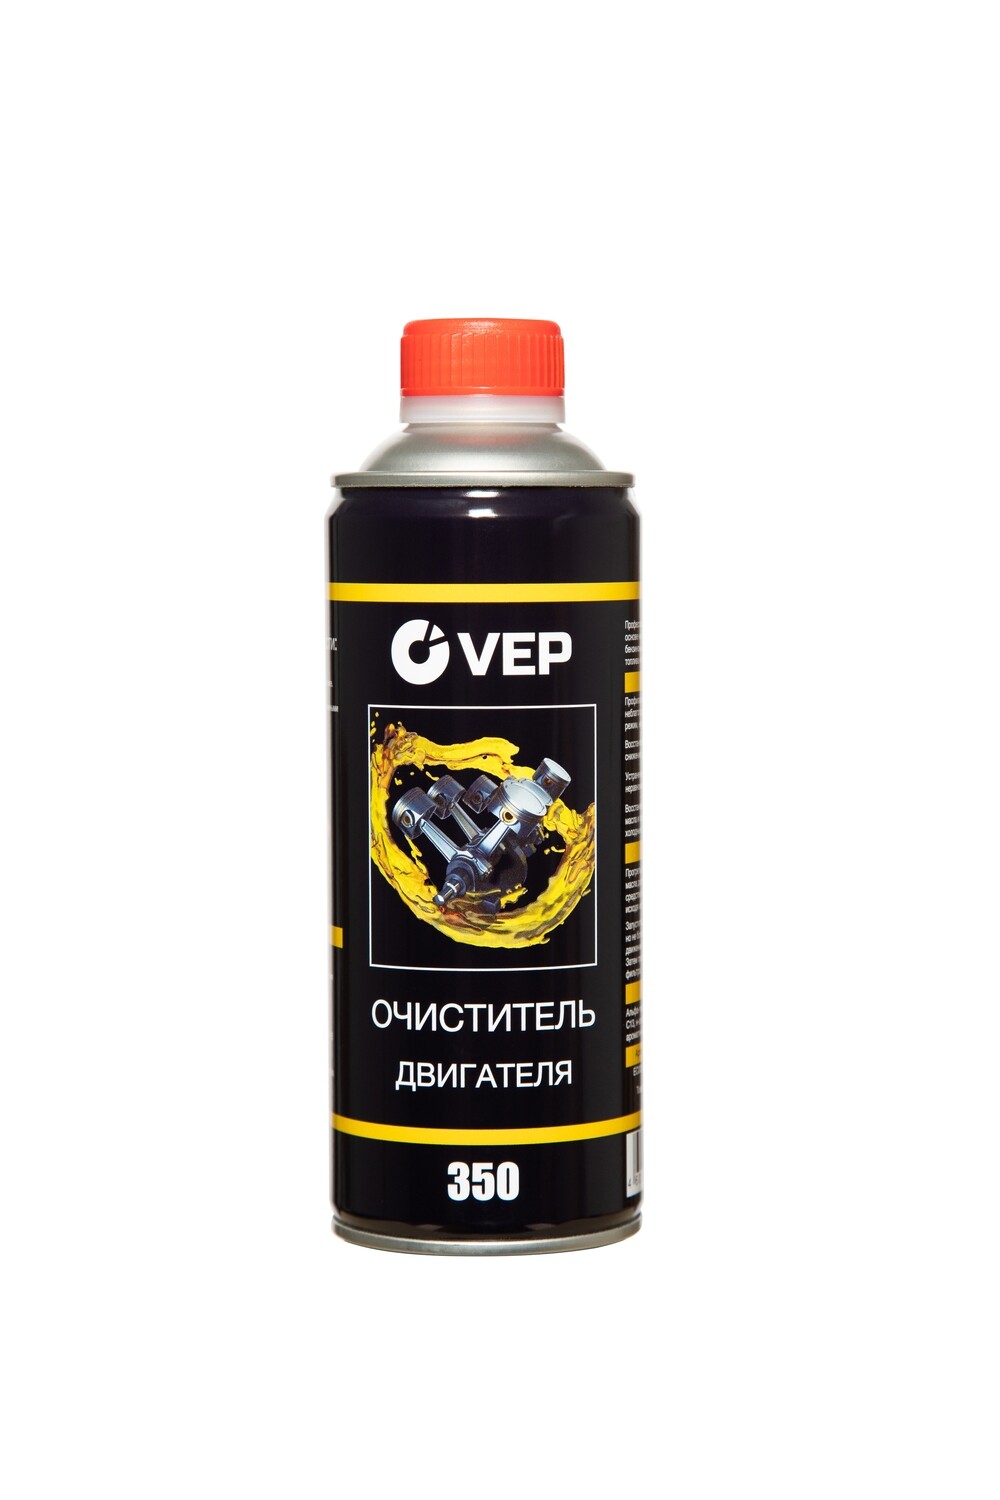 VEP Очиститель двигателя 480